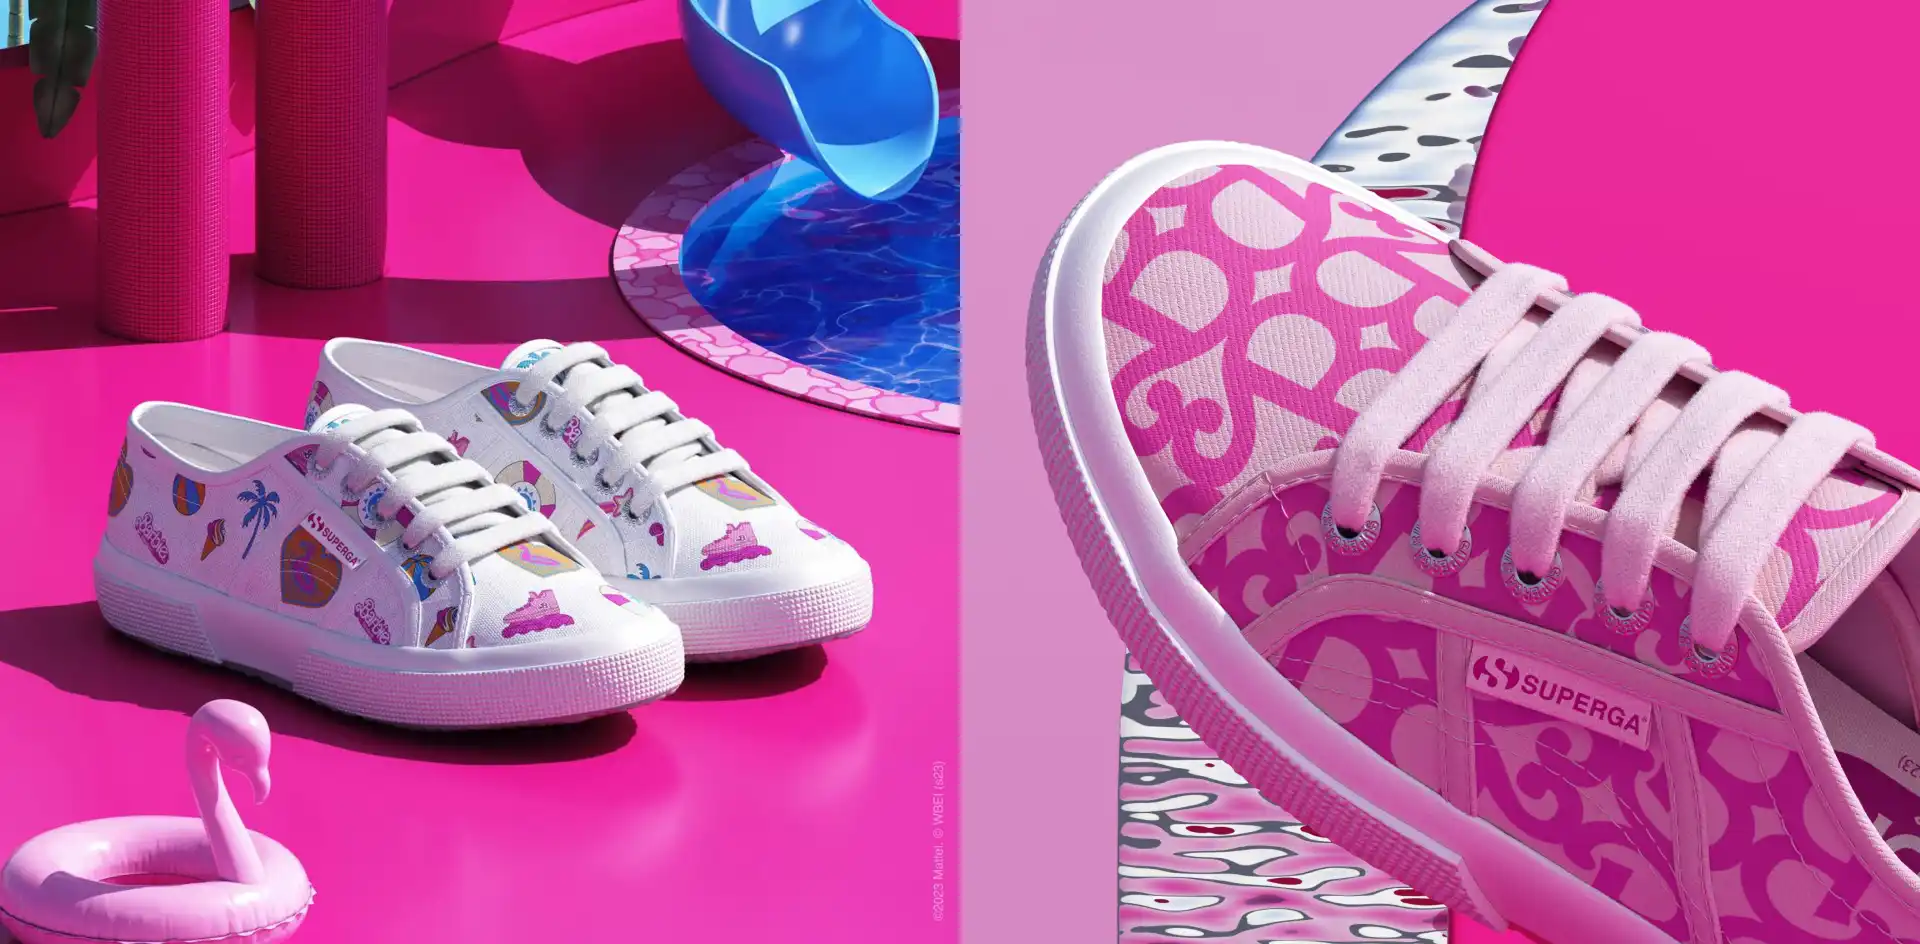 Así es la nueva colección de zapatillas de Barbie y Superga